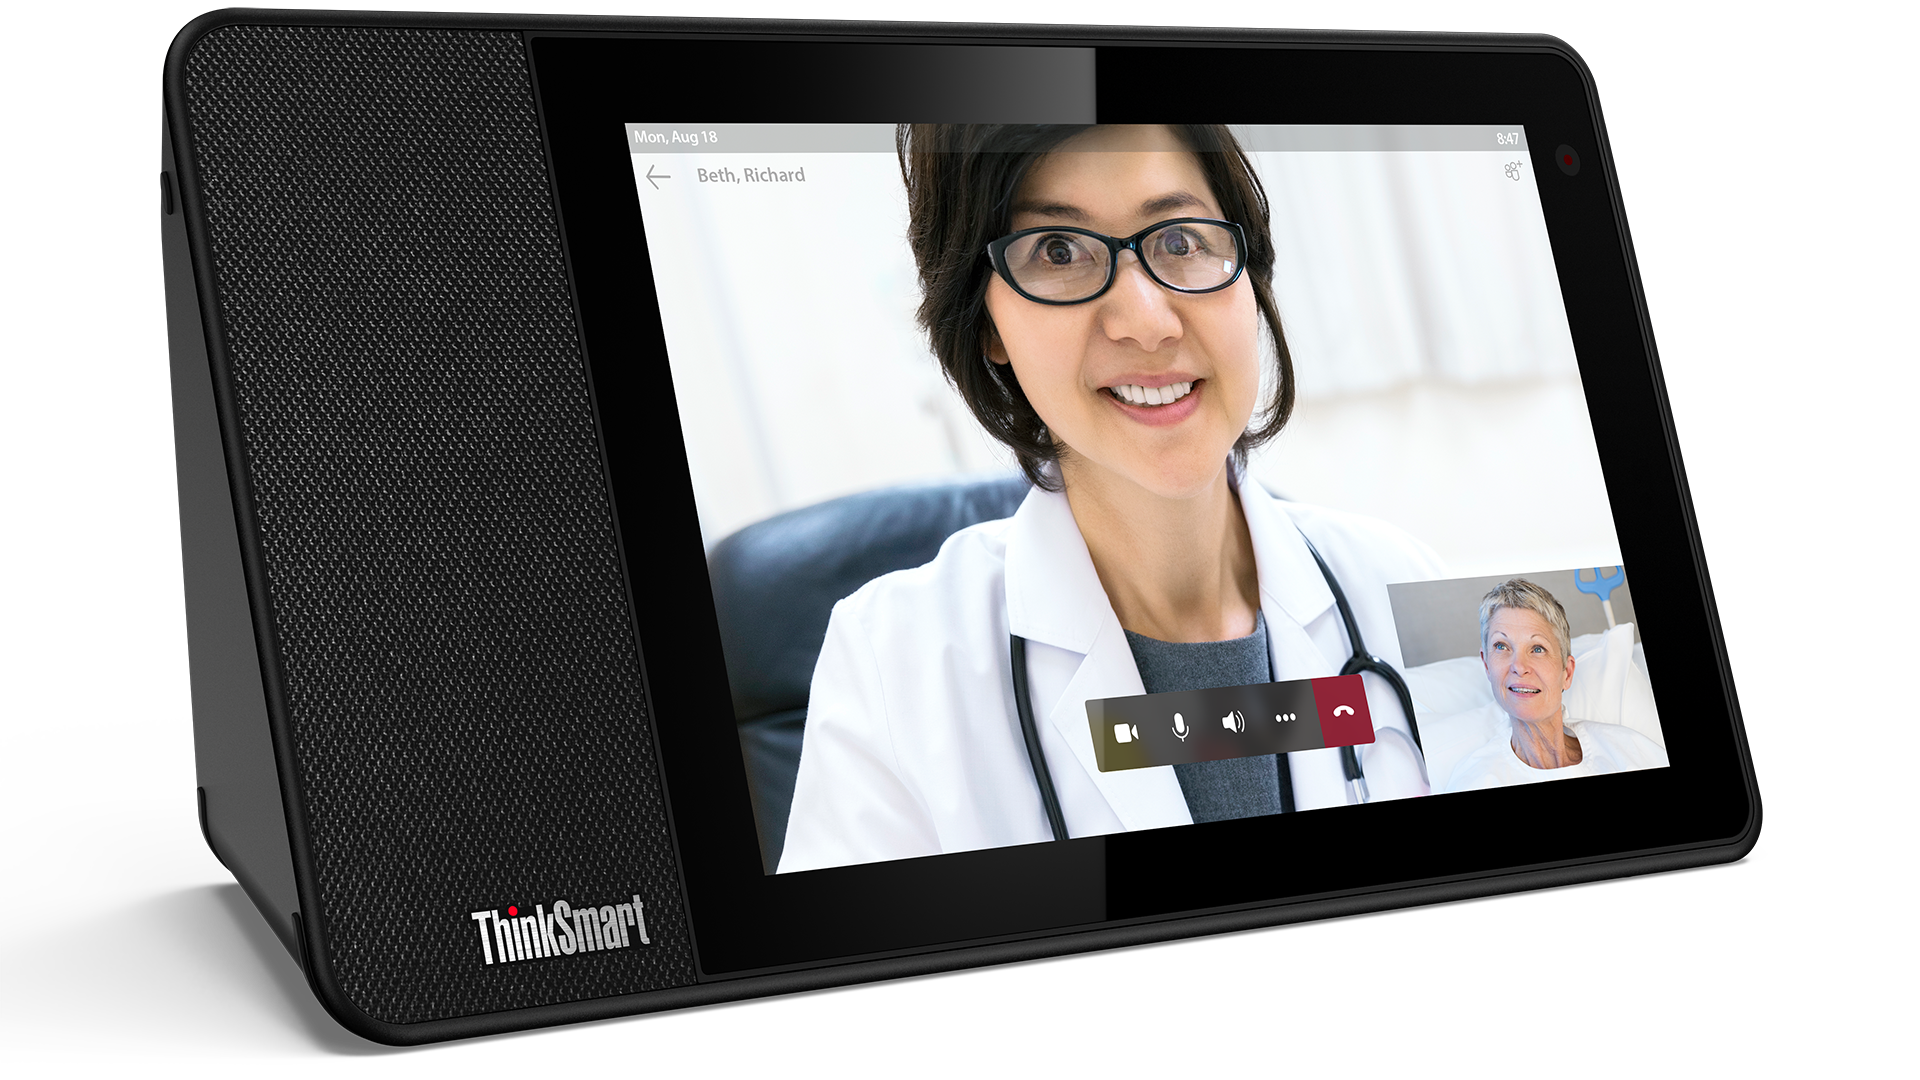 Un patient communique directement avec son médecin à l’aide d’un dispositif ThinkSmart